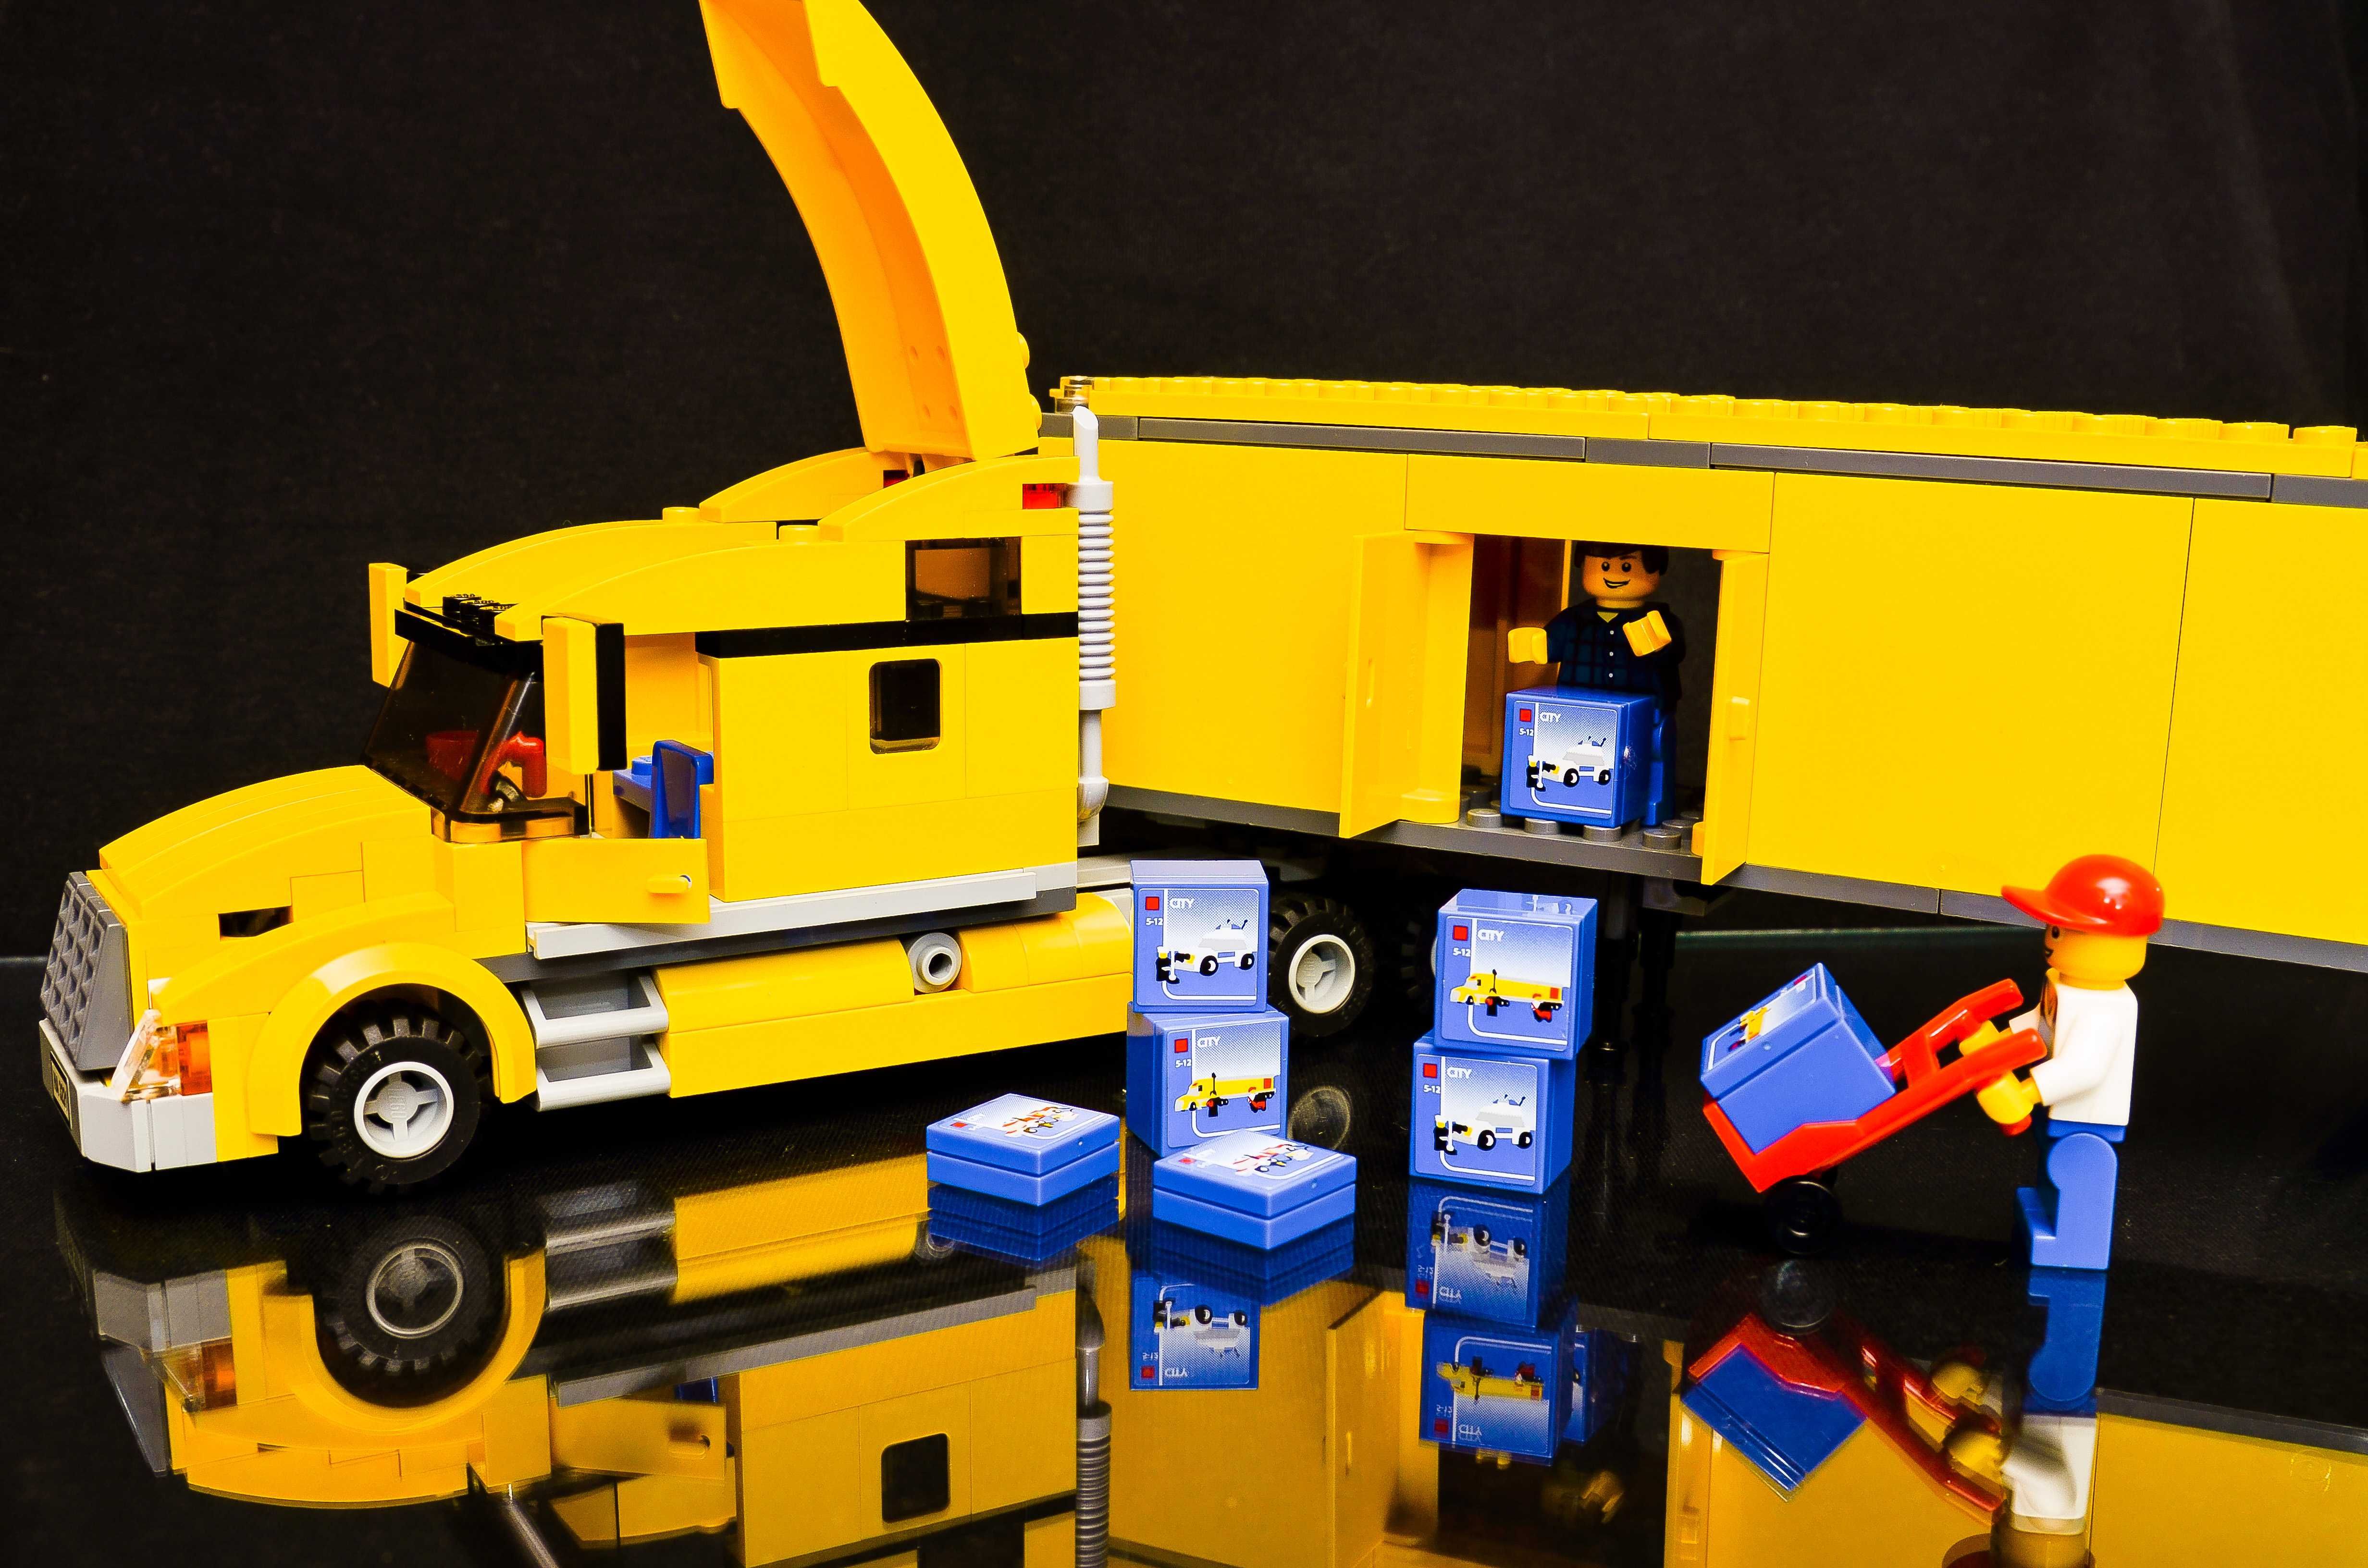 Klocki LEGO® 3221 Ciężarówka